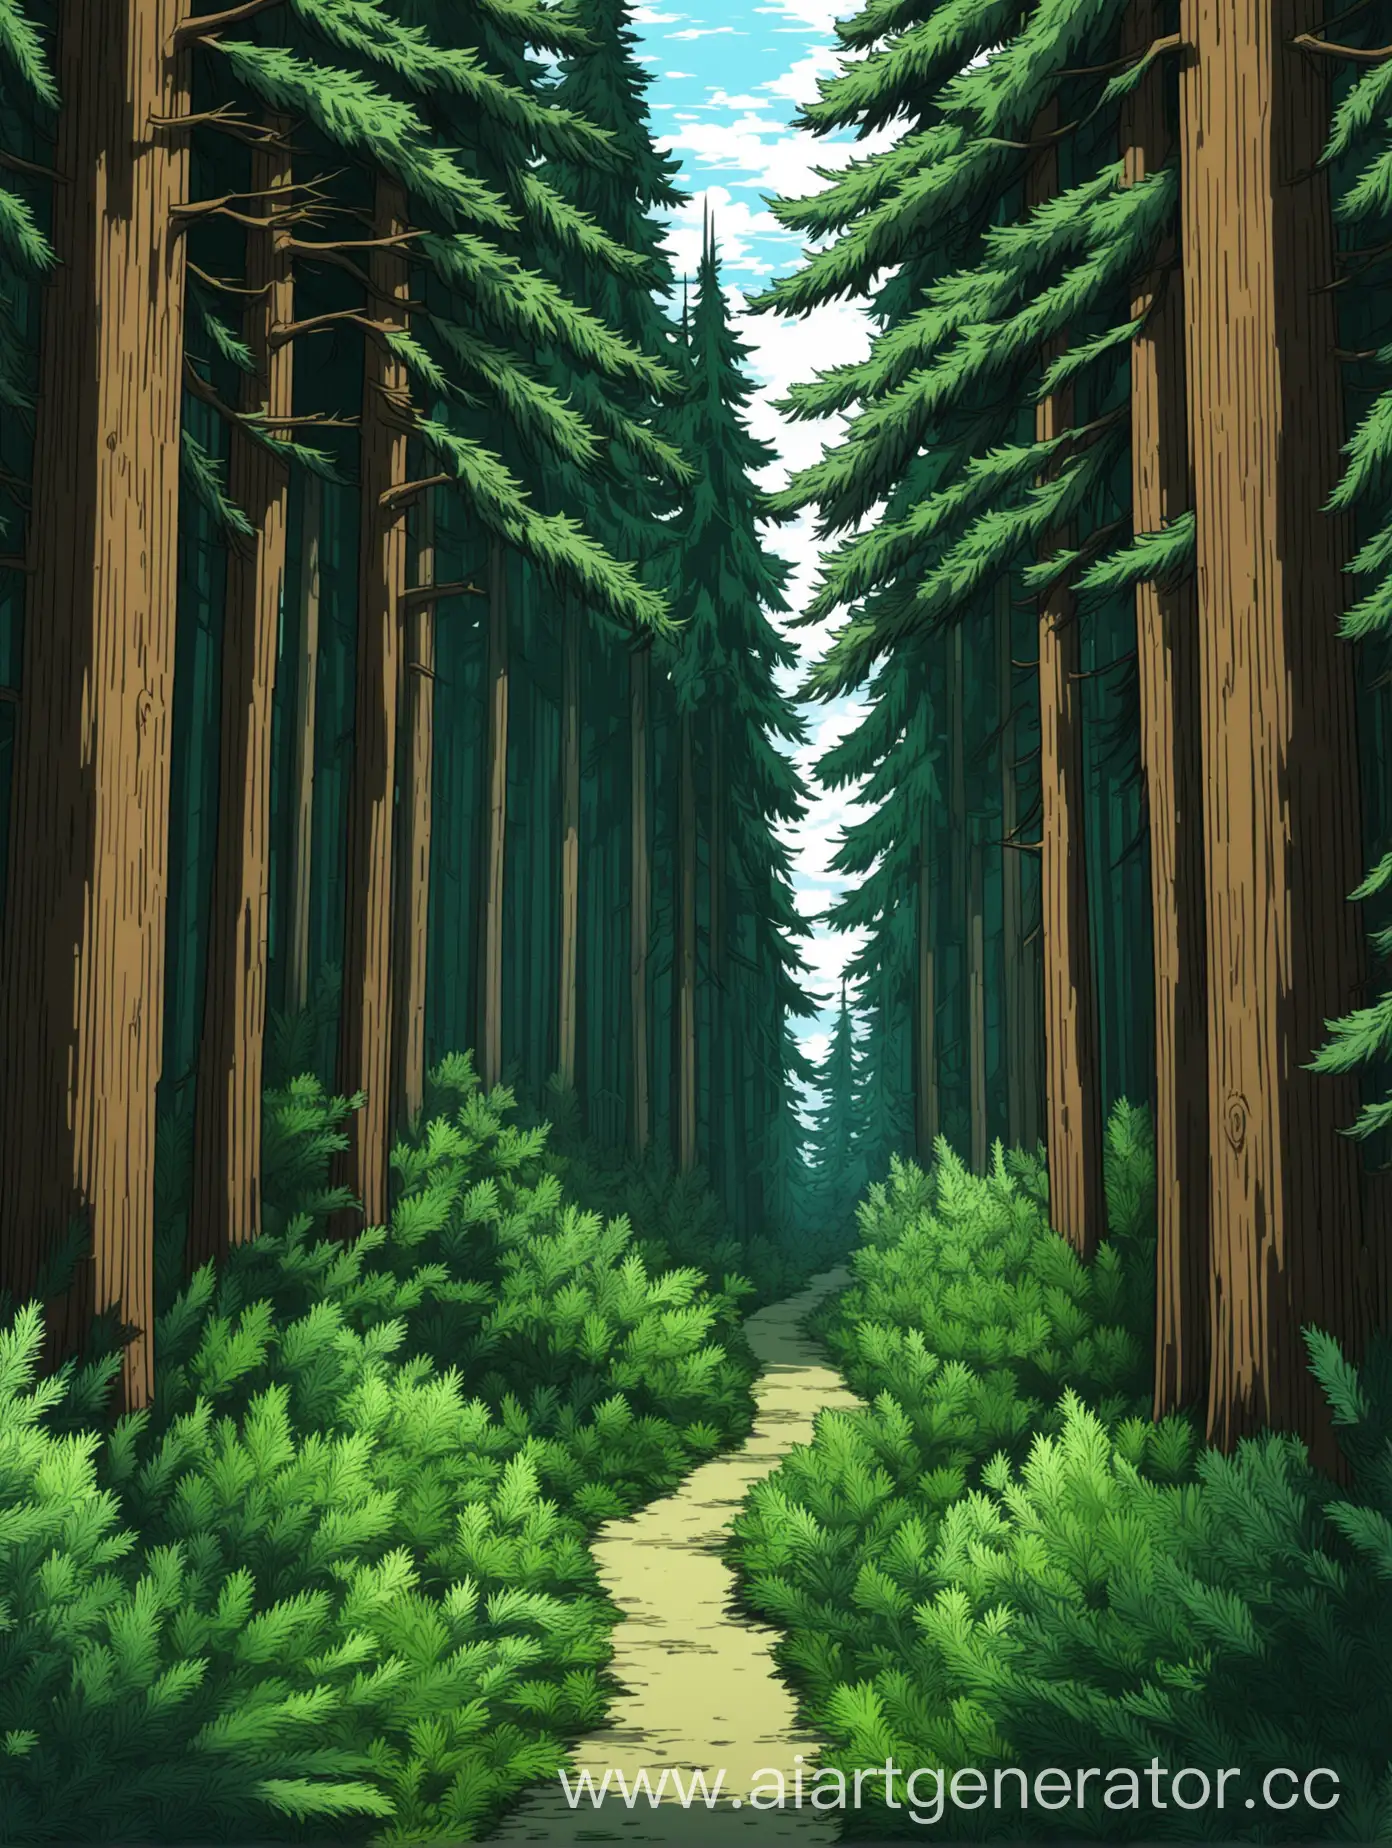 Лес в аниме стиле, высокие хвойные деревья, заросшая тропинка